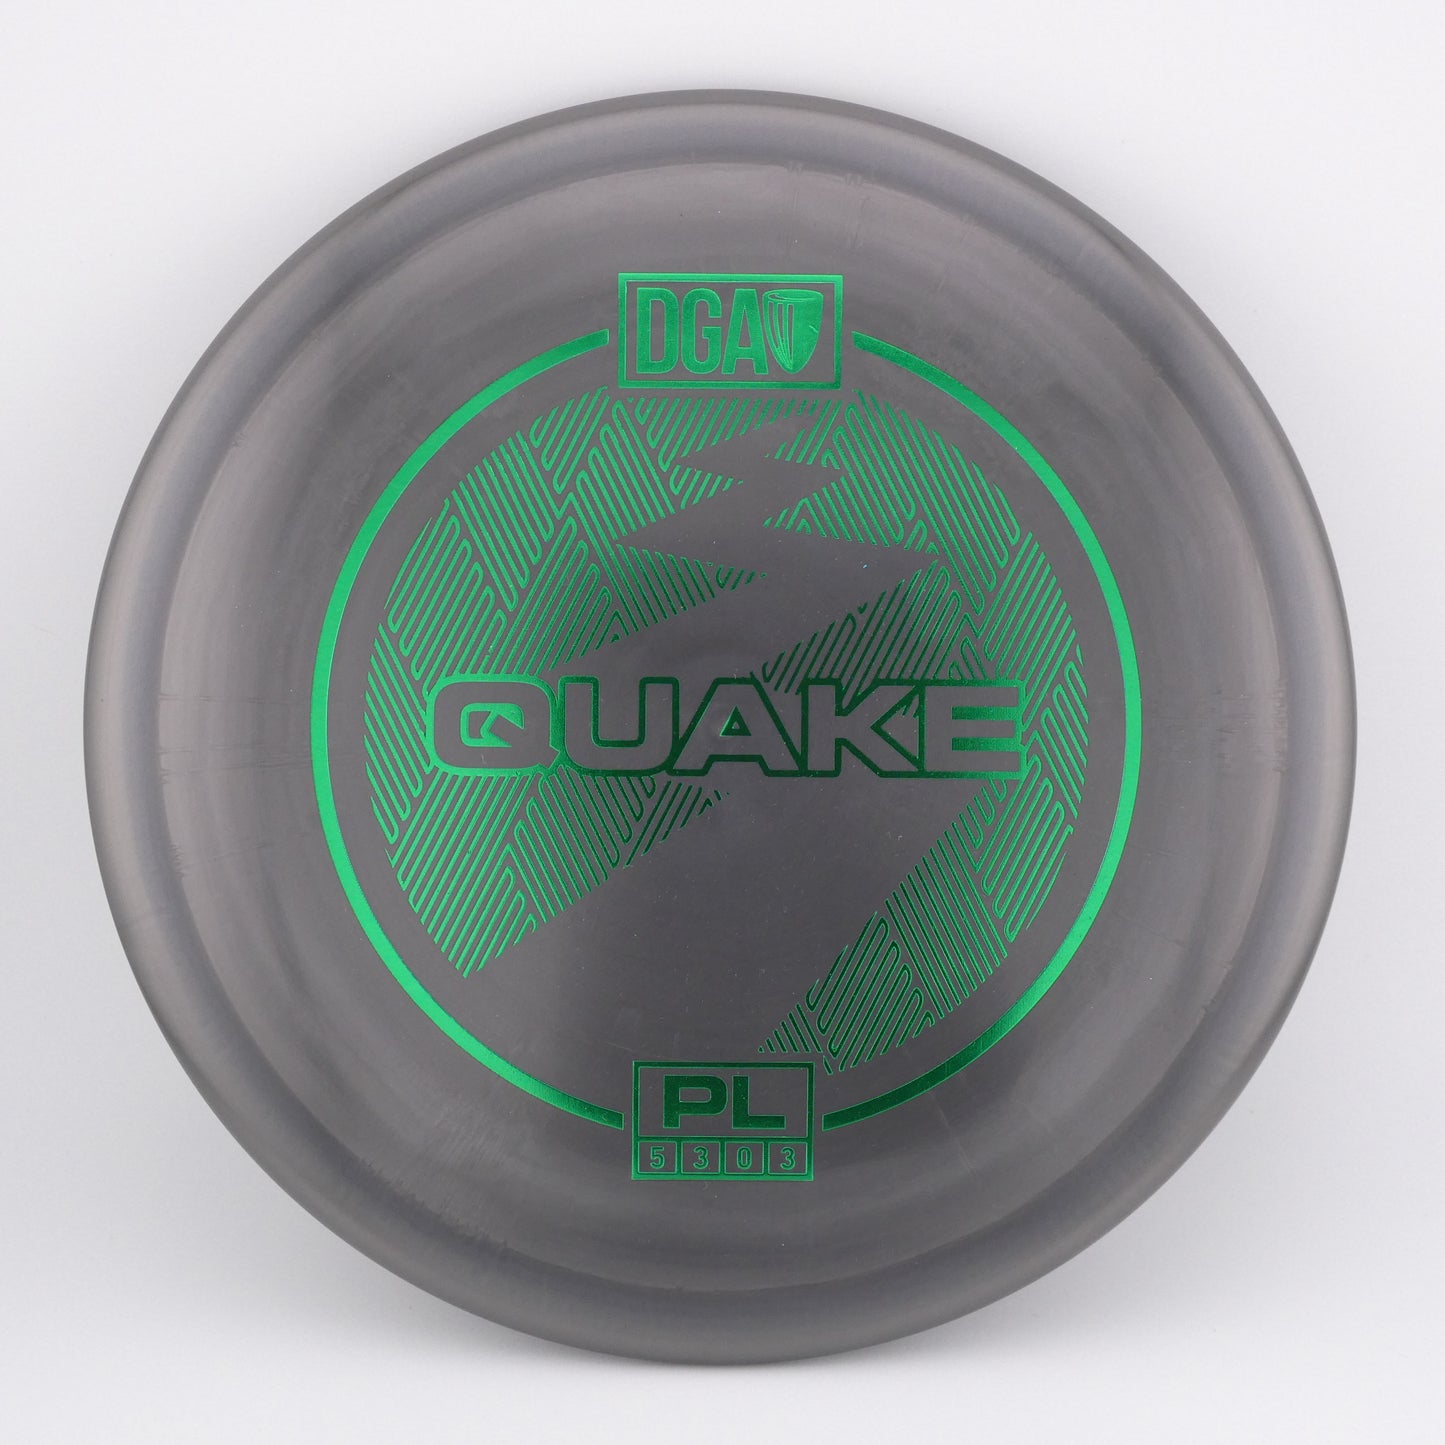 Pro Line Quake 173-174g